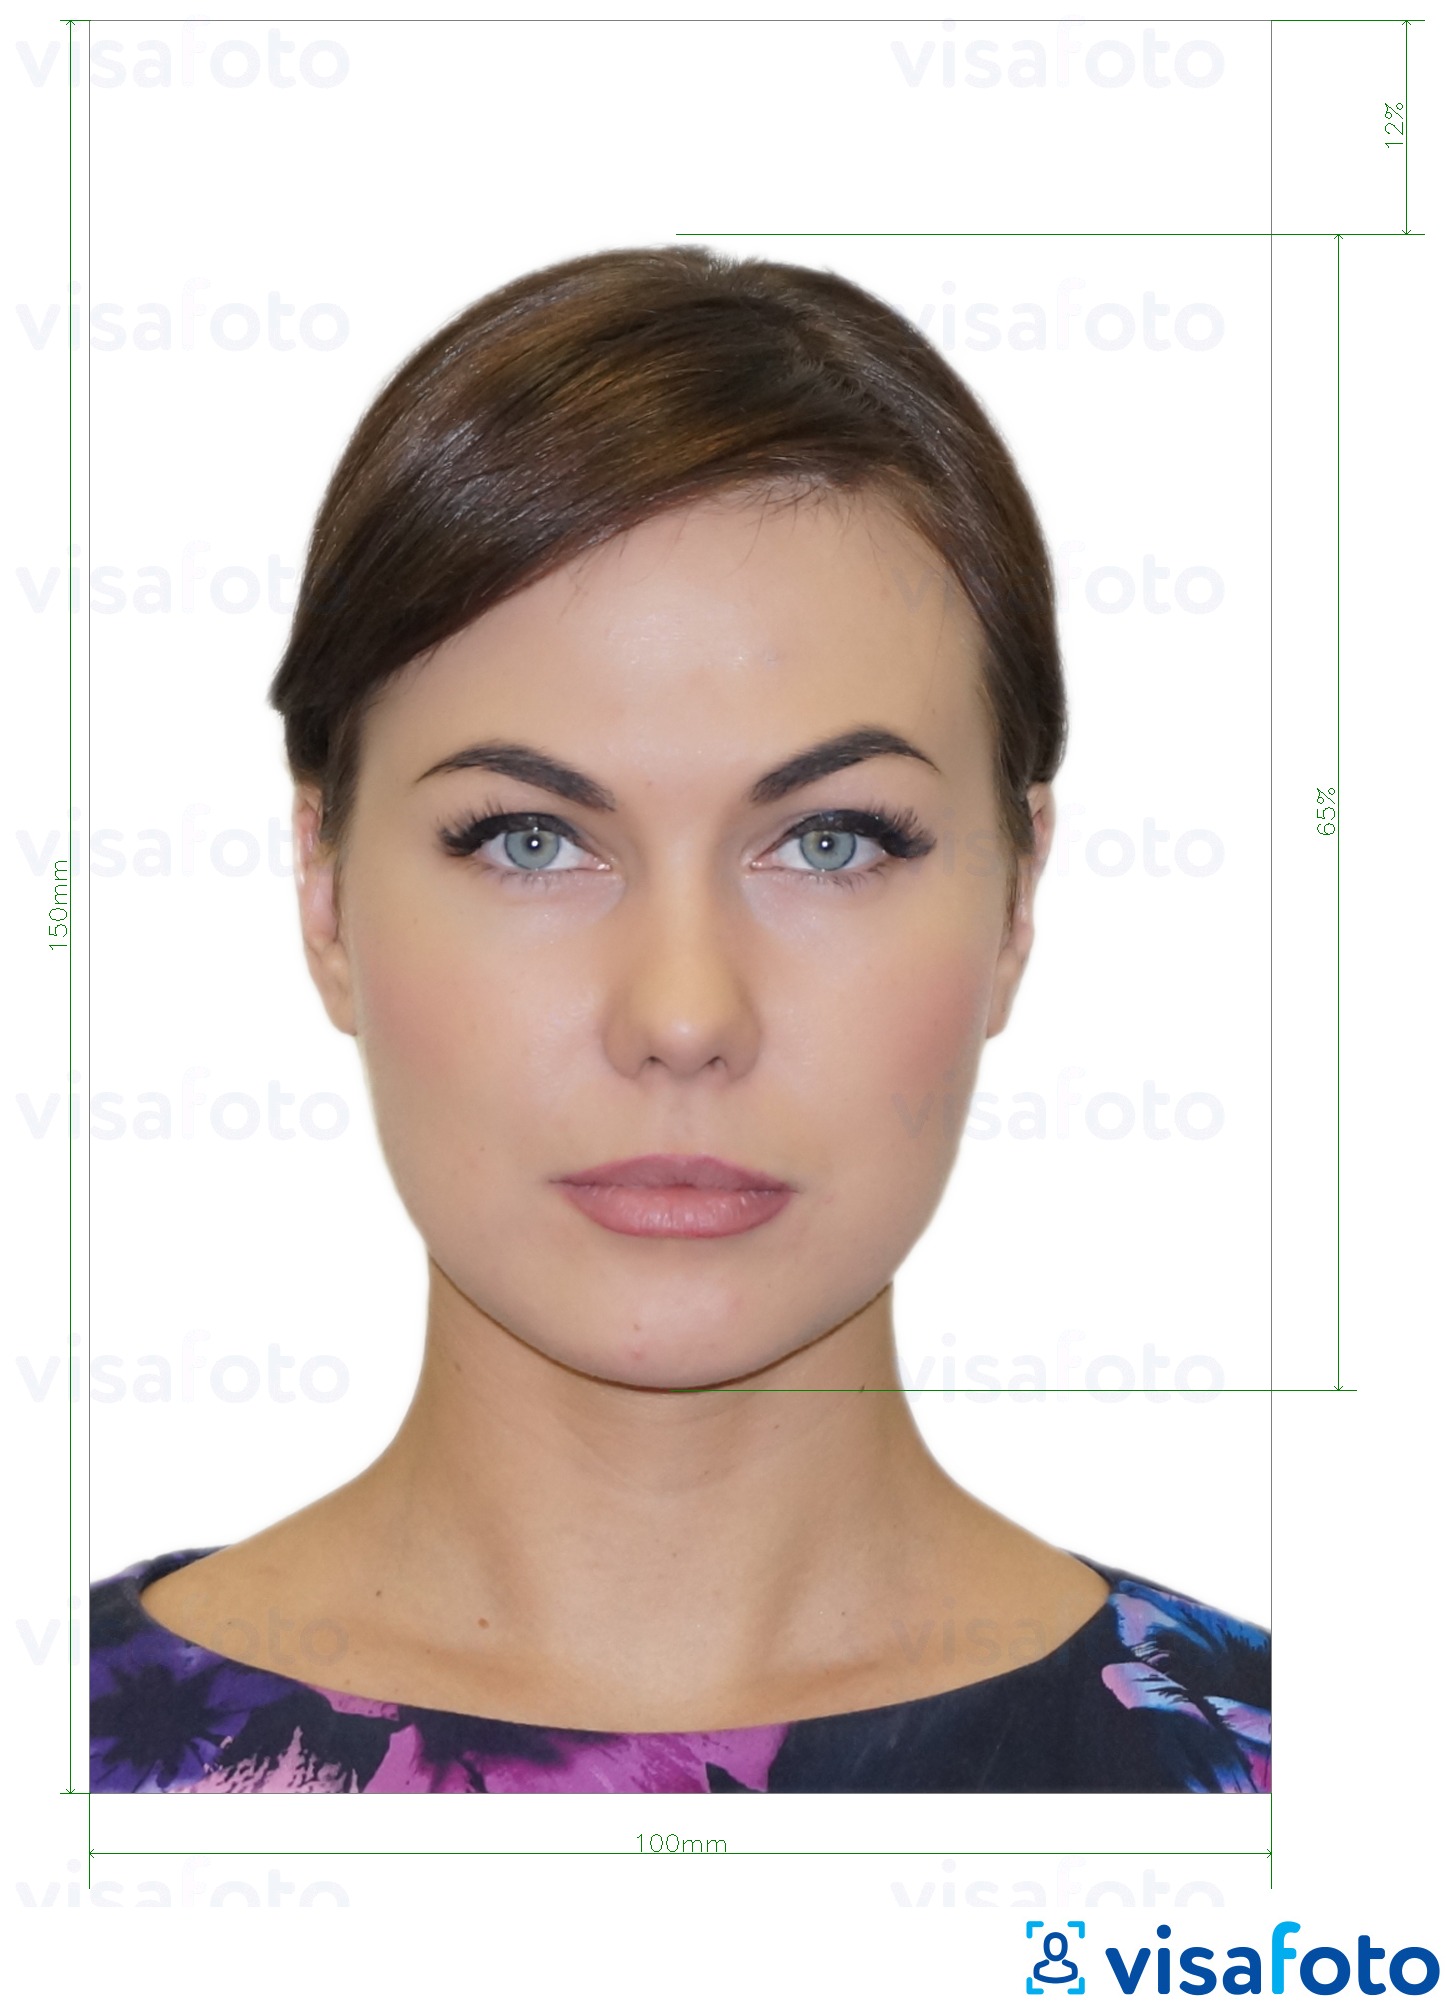 ဒီပံုရဲ့ ဥပမာ မော်လ်ဒိုဗာ ID ကိုကဒ် (Buletin က de identitate) 10x15 စင်တီမီတာ အတြက္​တိက်​ေသာသတ္​မွတ္​ခ်က္​မ်ားႏွင္​့